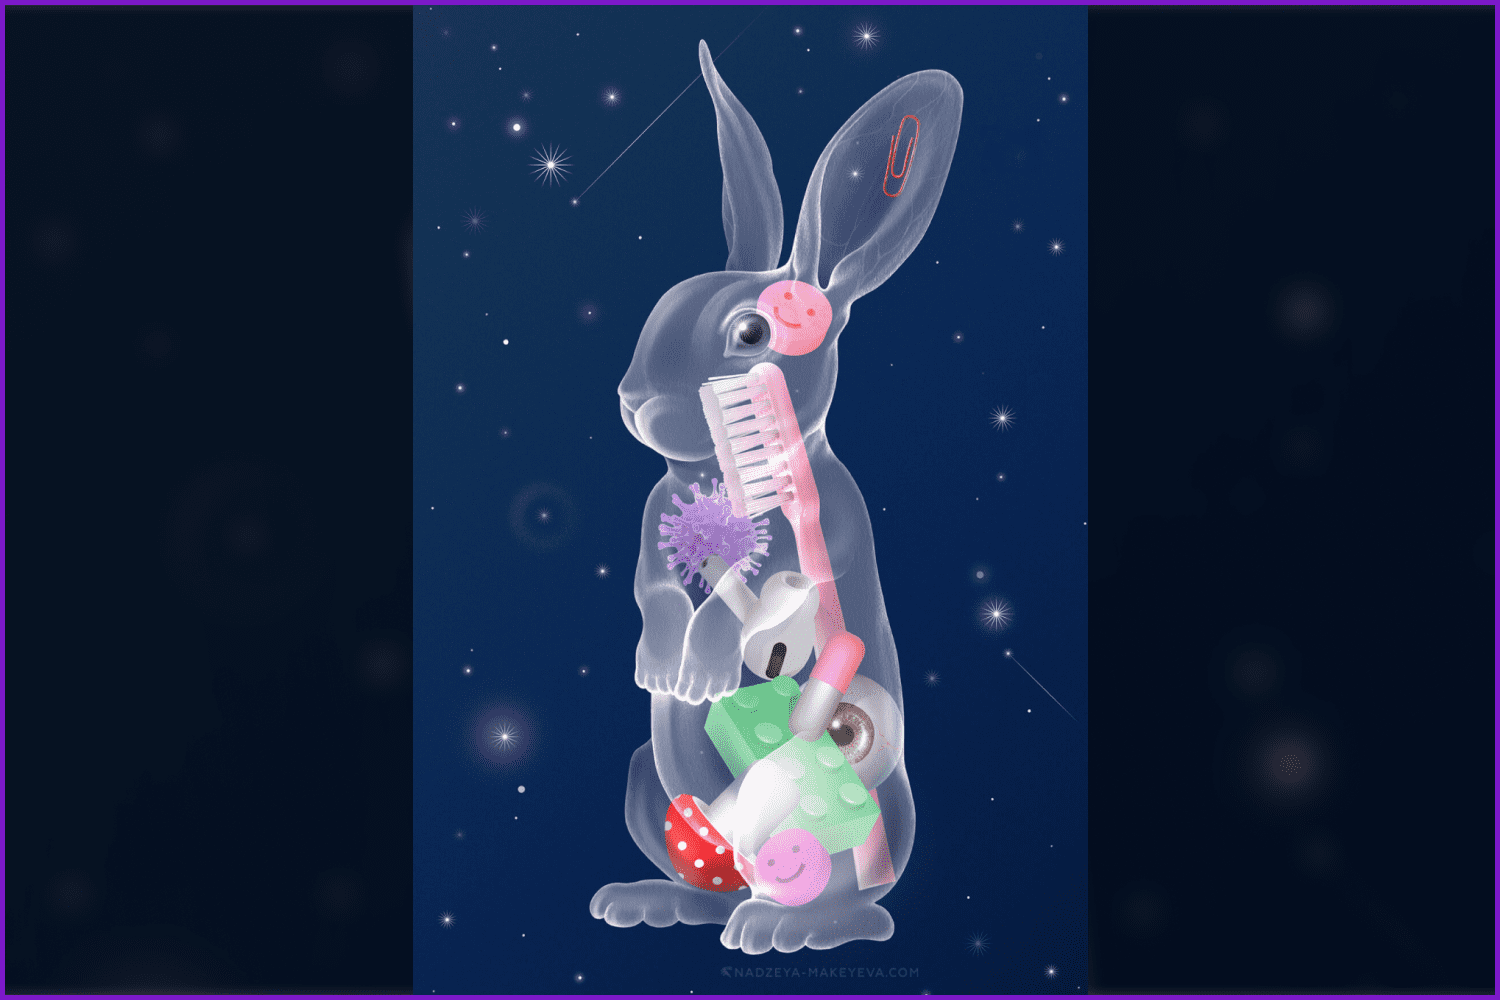 11 the atomic rabbit by nadzeya makeyeva.